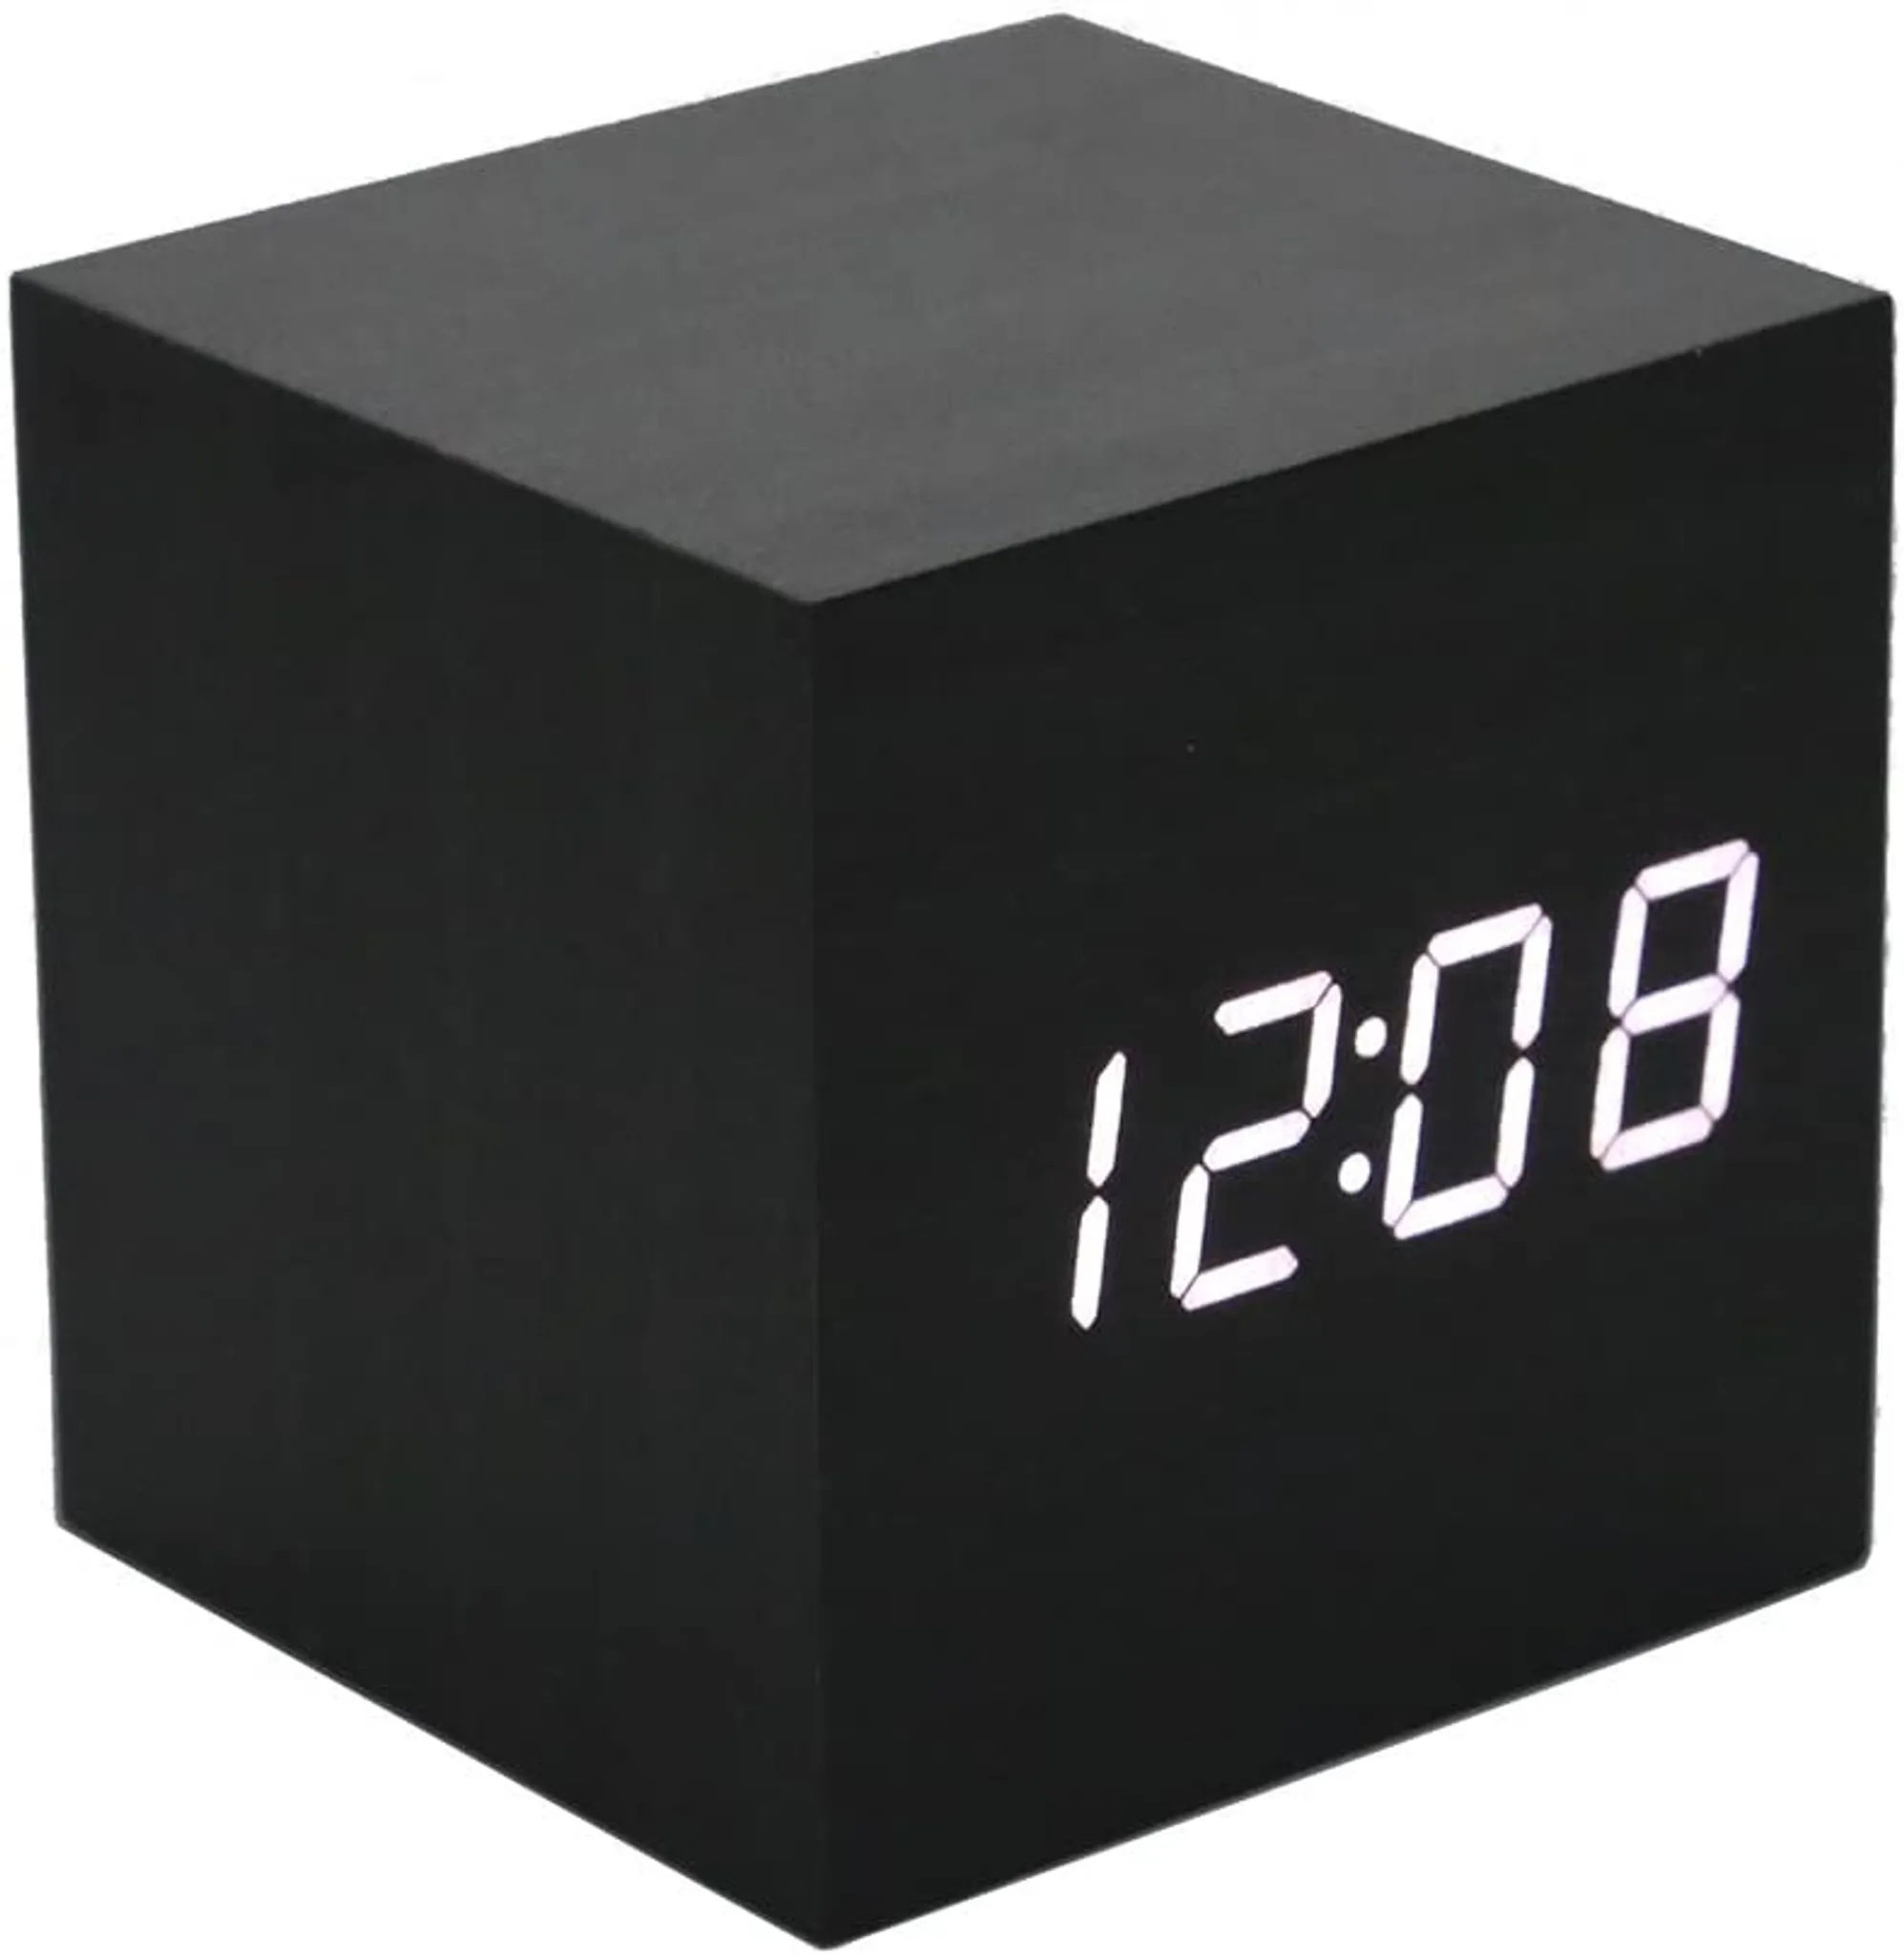 Holzwecker - Mini-Digitaluhr mit Temperatur-Zeitanzeige, 3-stufiger  Helligkeit und Sprachsteuerung, perfekt für Reisen zu Hause